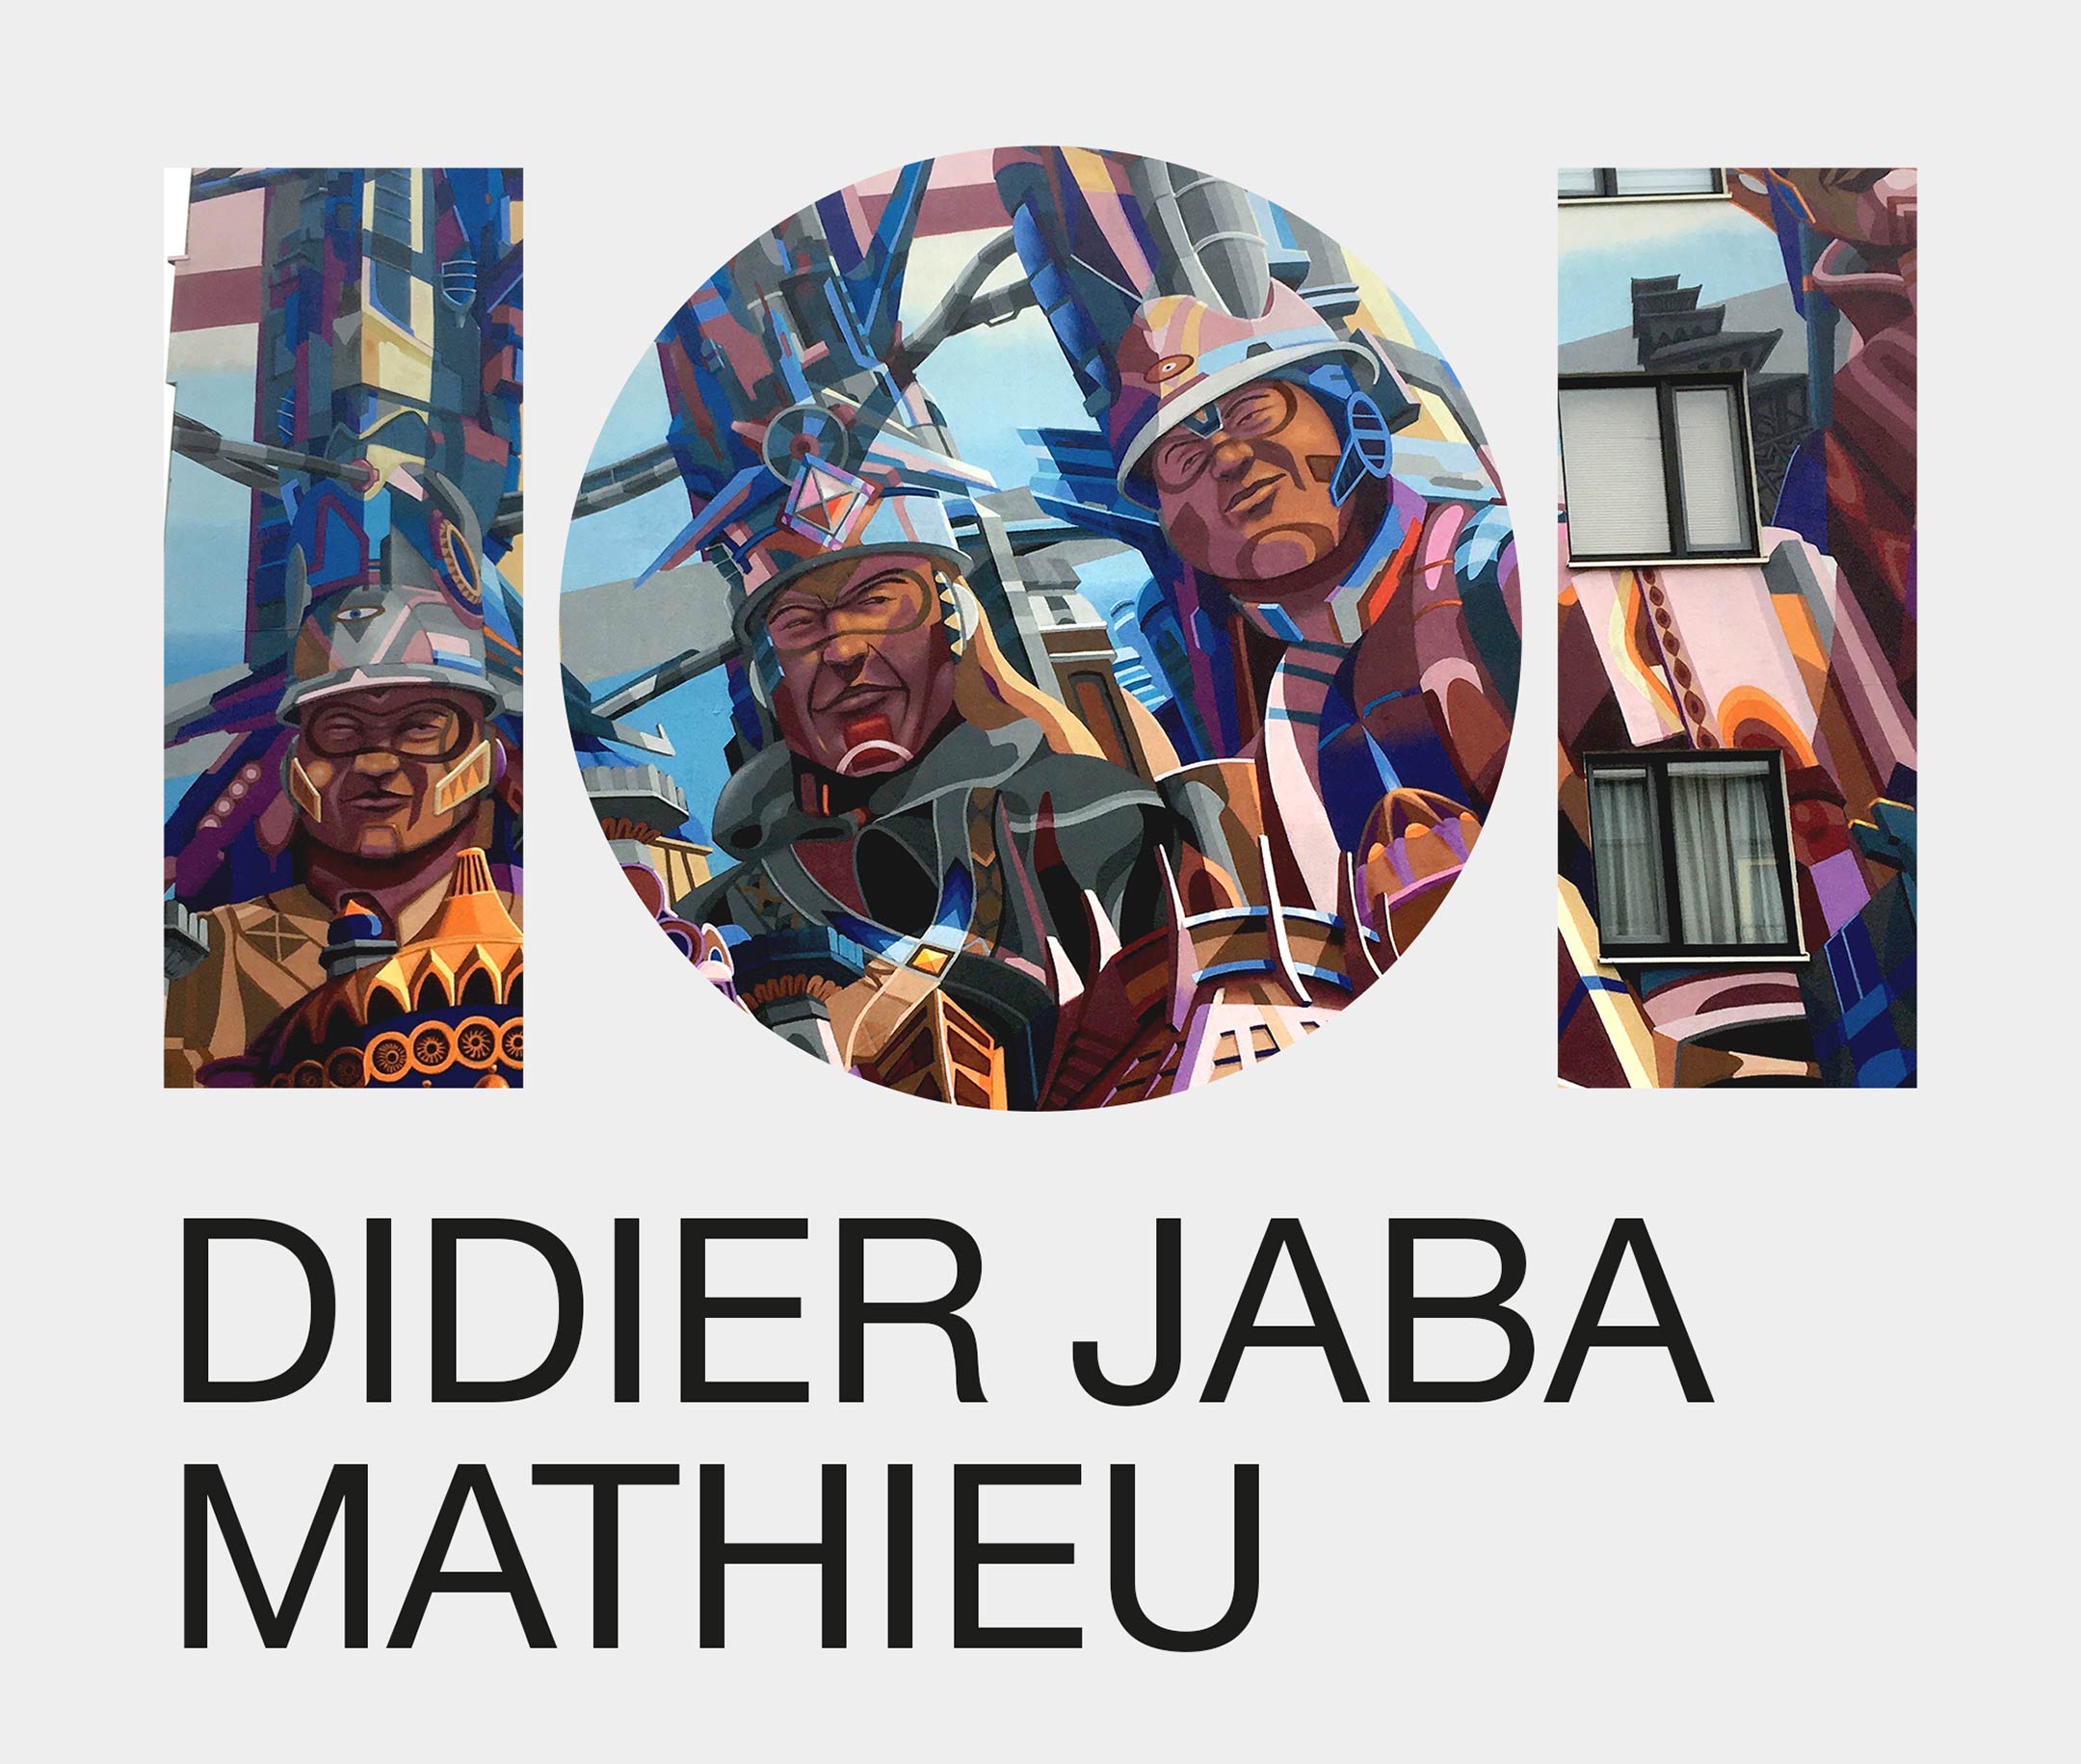 DIDIER-JABA-MATHIEU